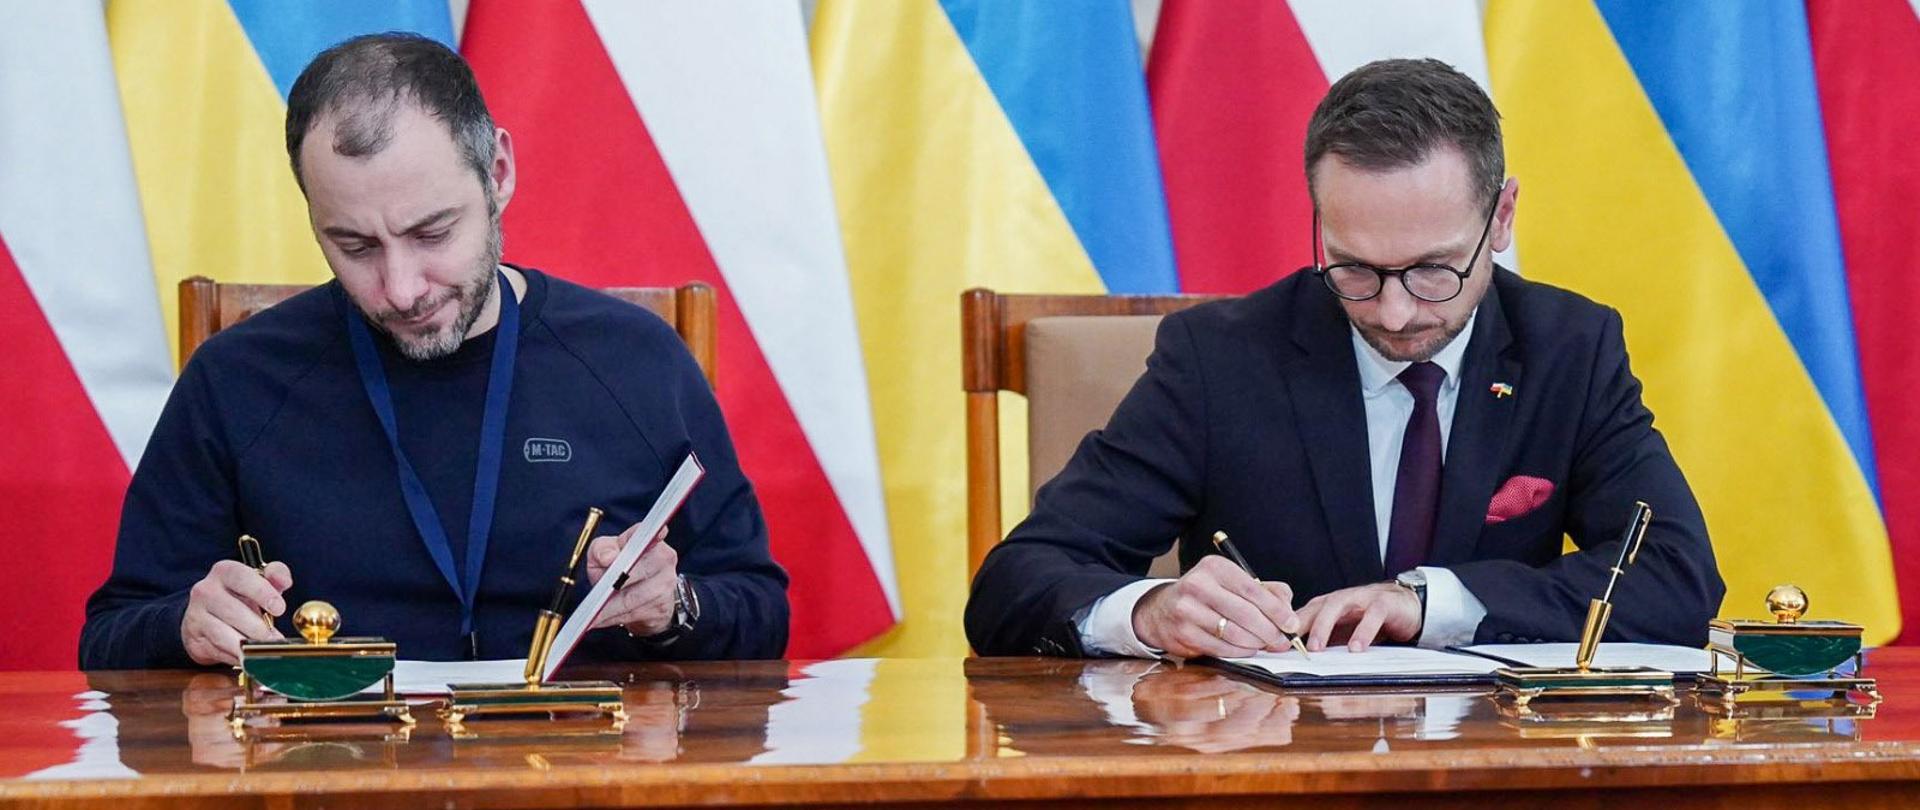 Podpisanie memorandum przez ministra rozwoju i technologii Waldemara Budę i wicepremiera Ukrainy Oleksandra Kubrakova.
